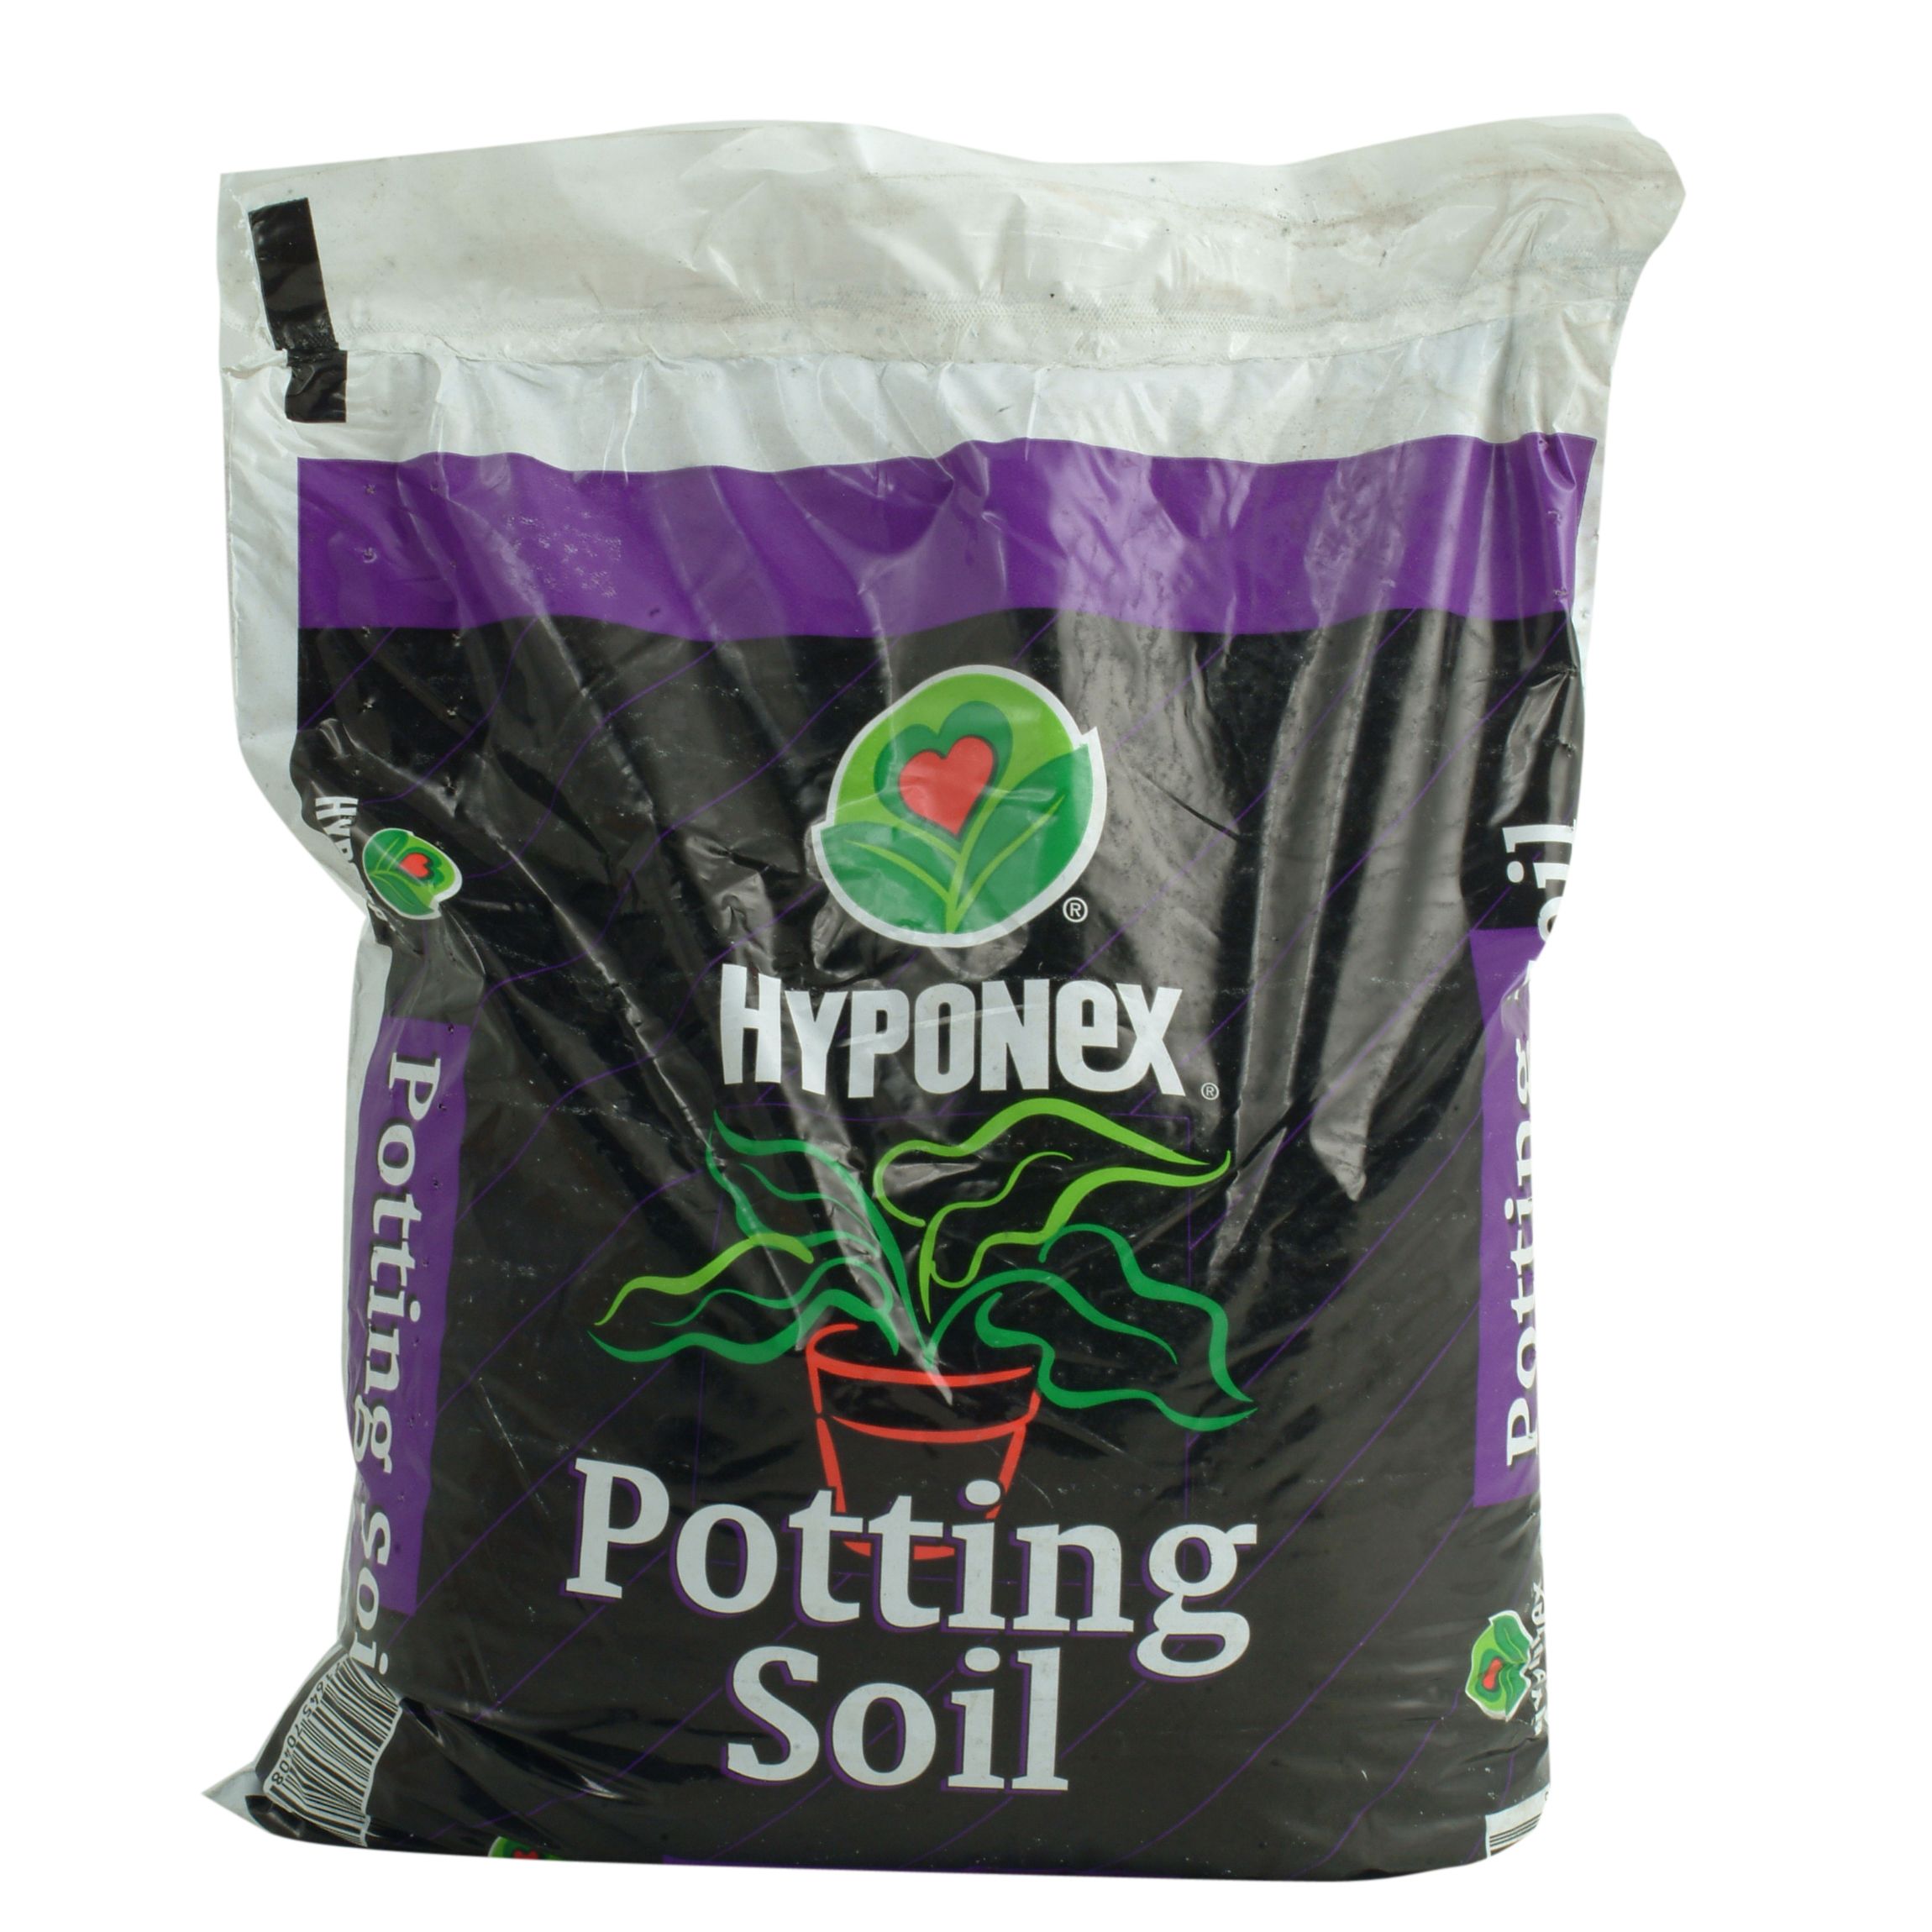 Hyponex Potting Soil